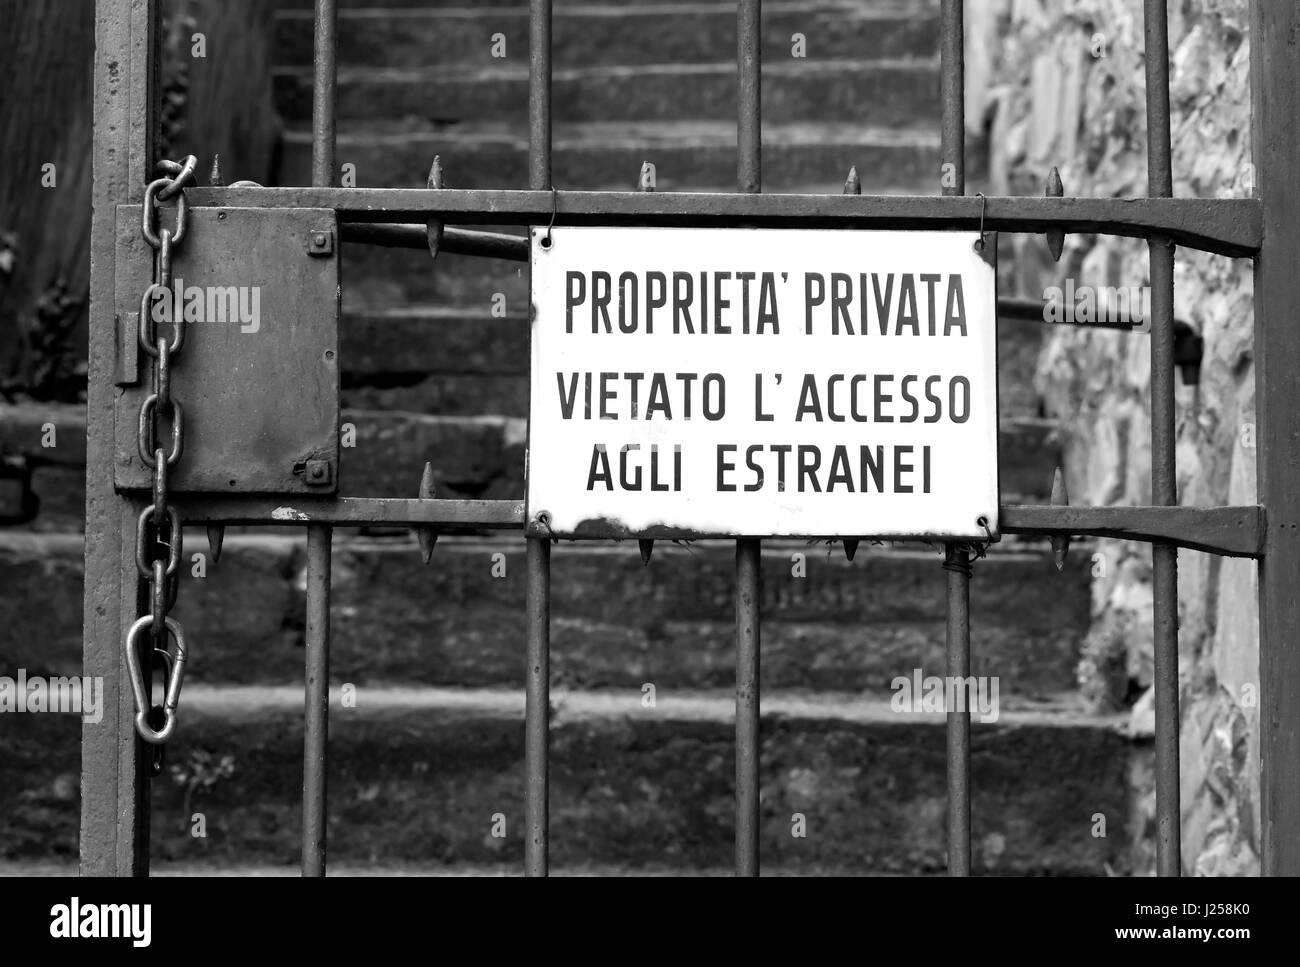 Image Style noir et blanc de 'propriété privée' en italien Banque D'Images